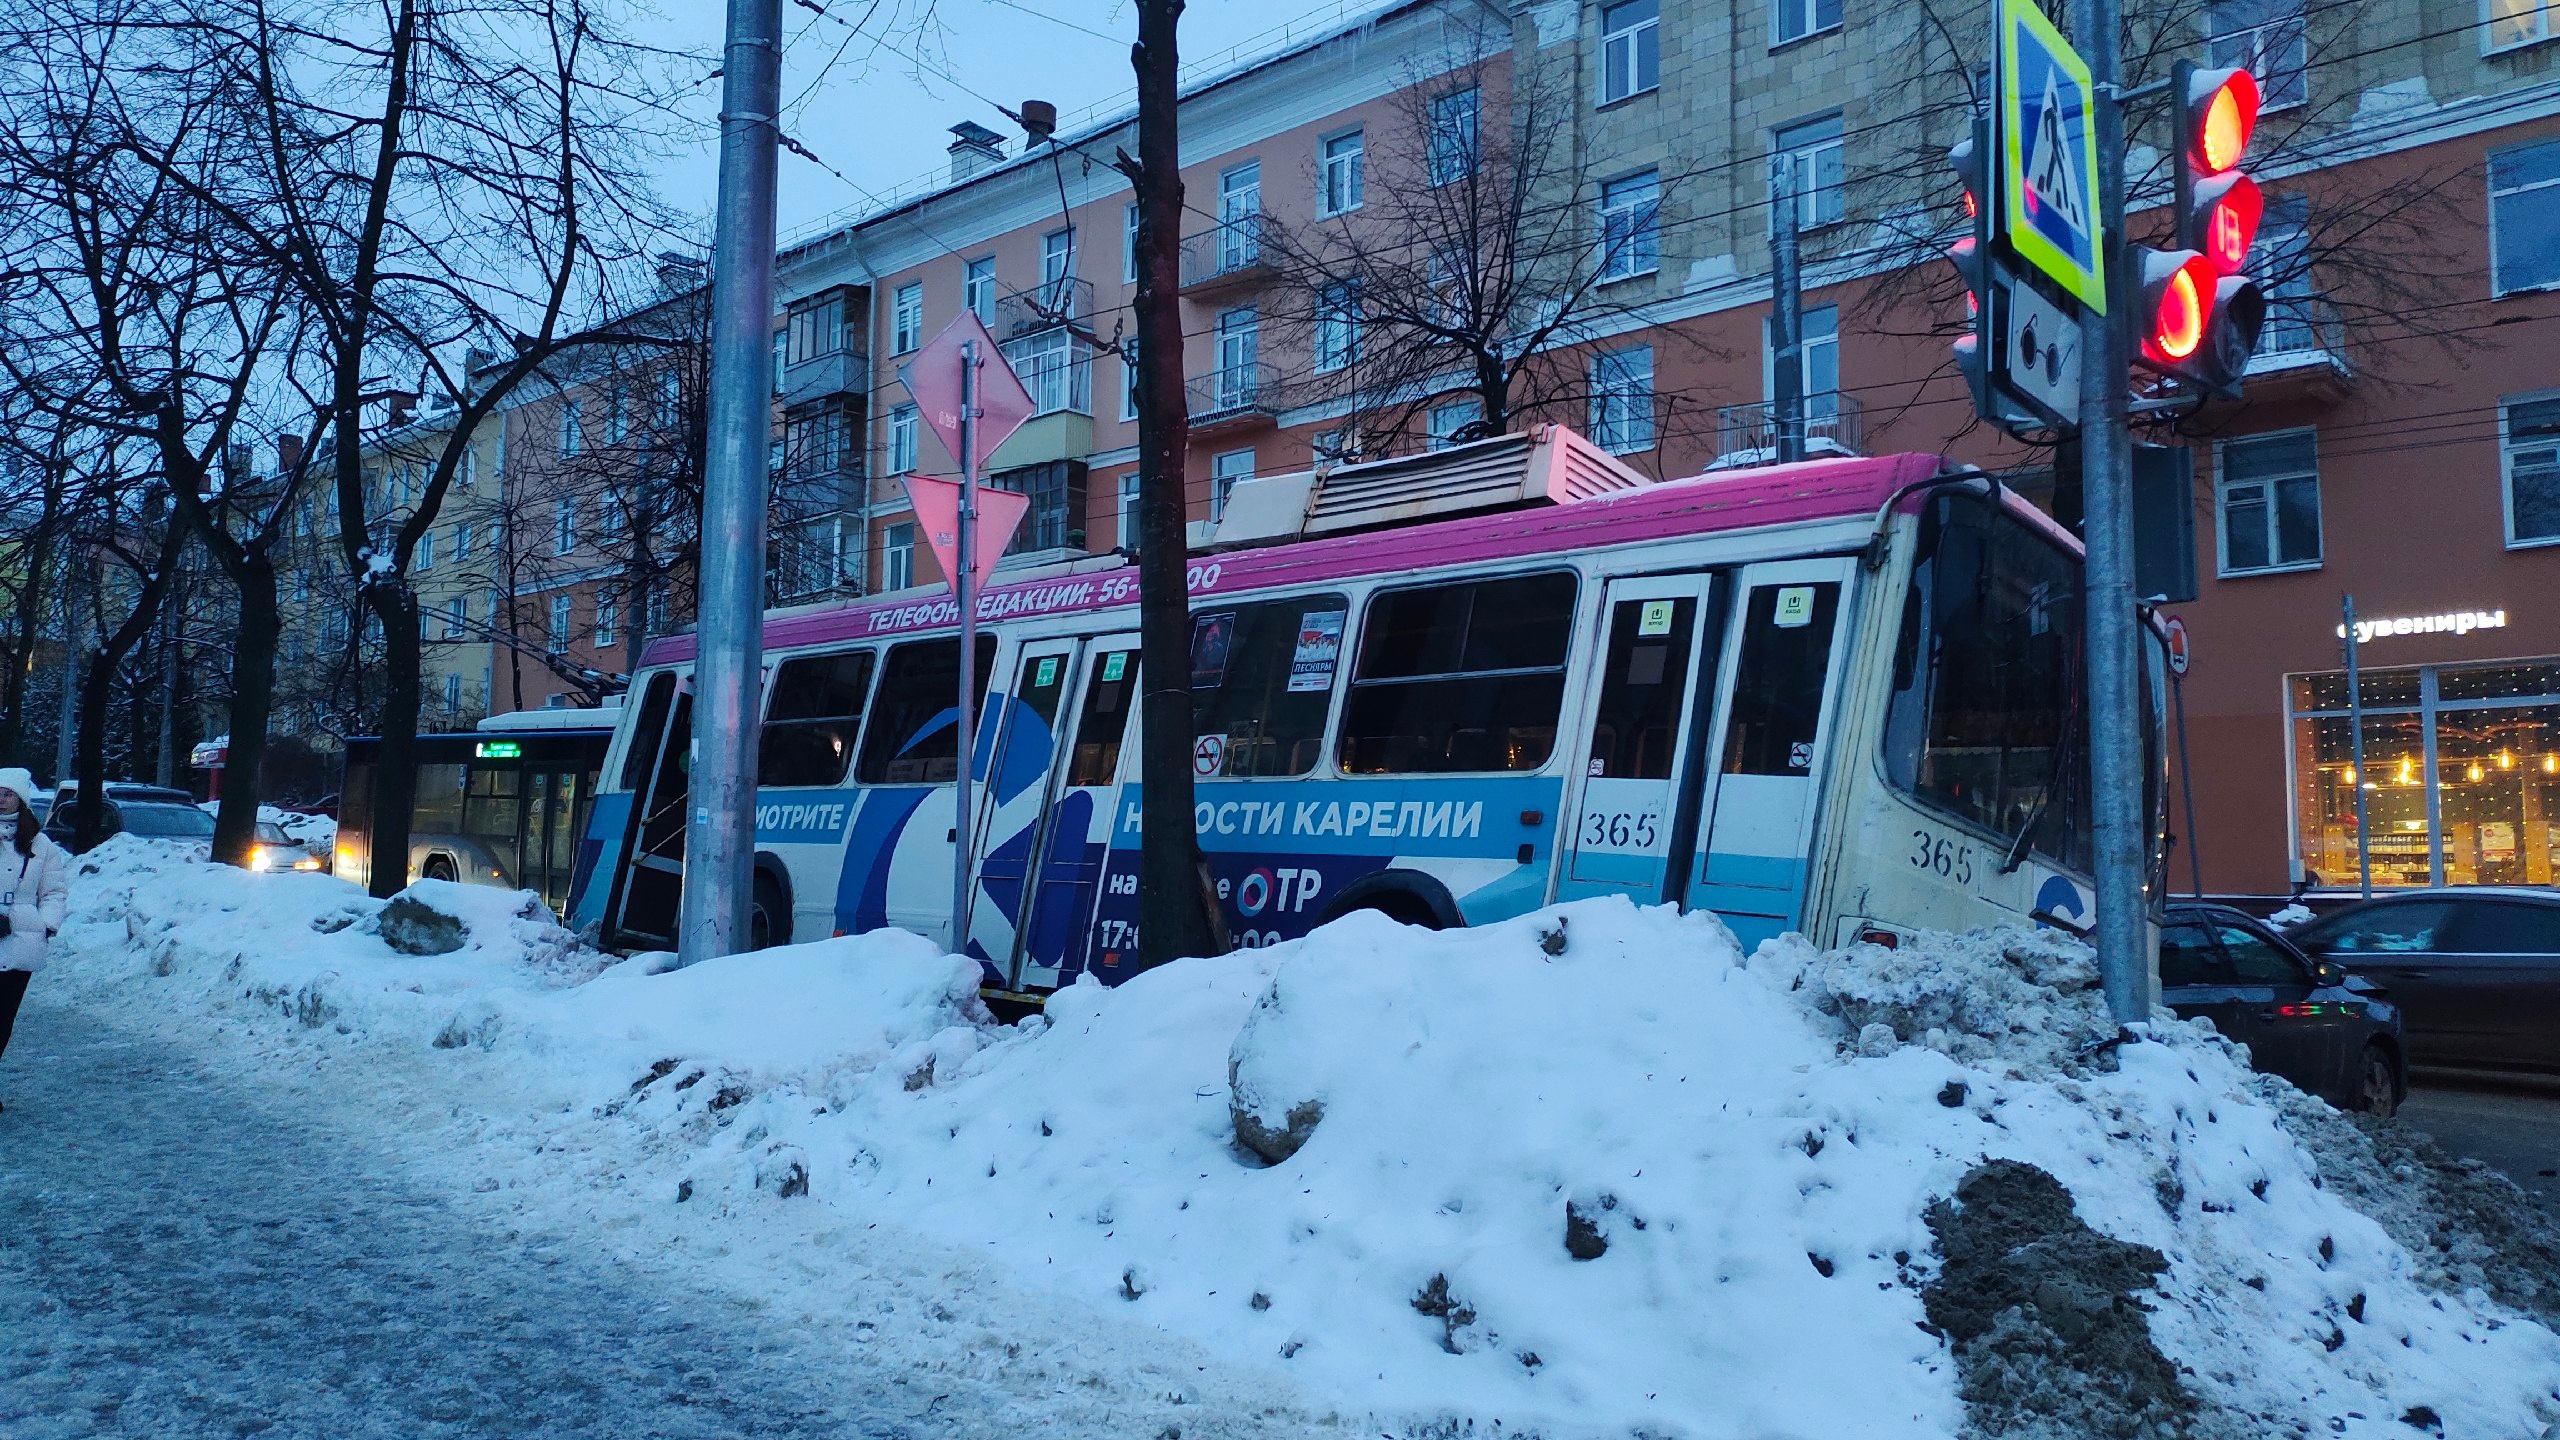 Полиция проверяет обстоятельства ДТП, где троллейбус снес два автомобиля в центре Петрозаводска